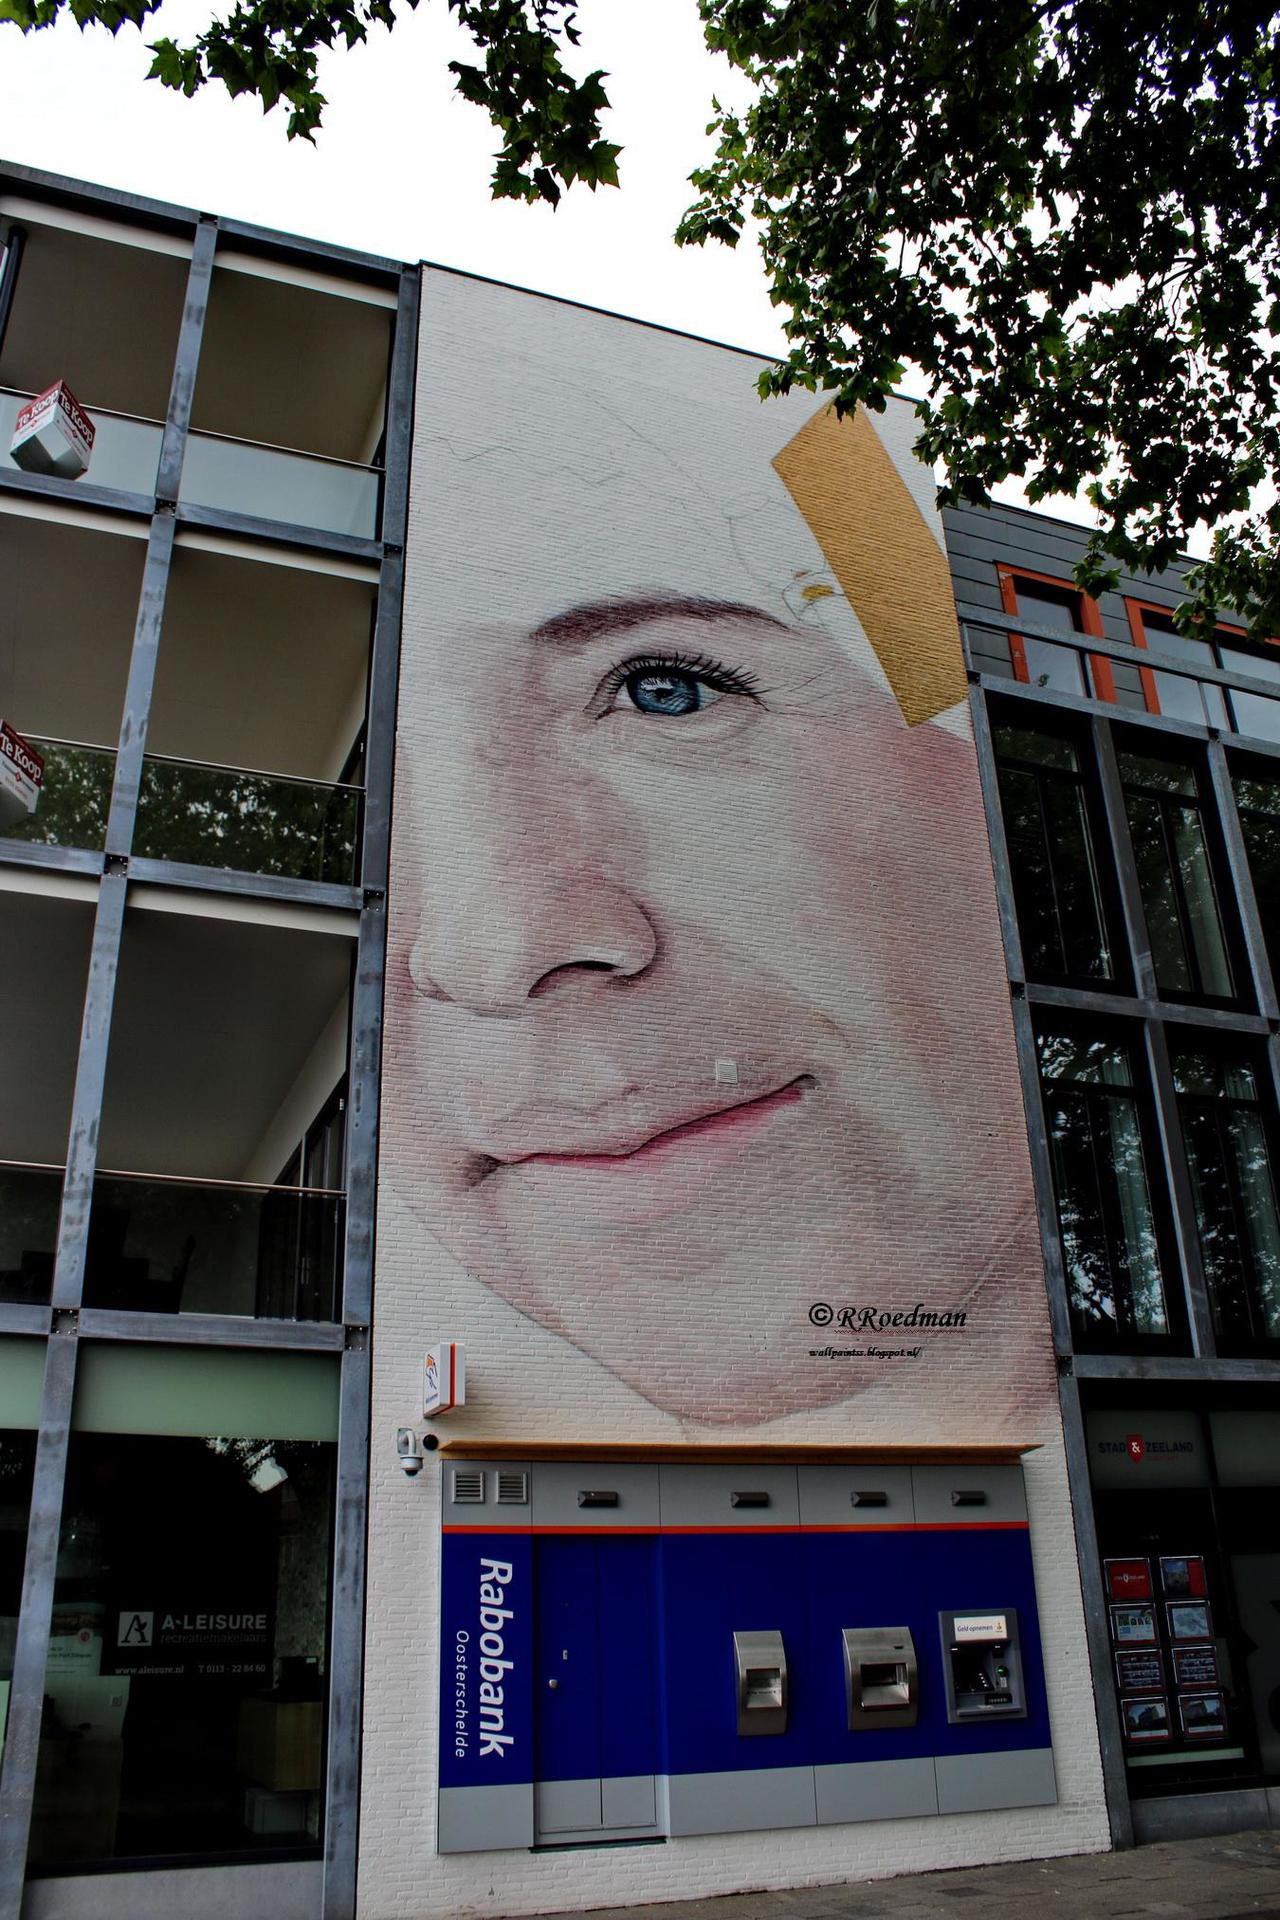 RT @RRoedman: #streetart #graffiti #mural smiling face in #Goes from #JorgeRodriguezGerada ,2 pics at http://wallpaintss.blogspot.nl http://t.co/dZmJNwoPqw